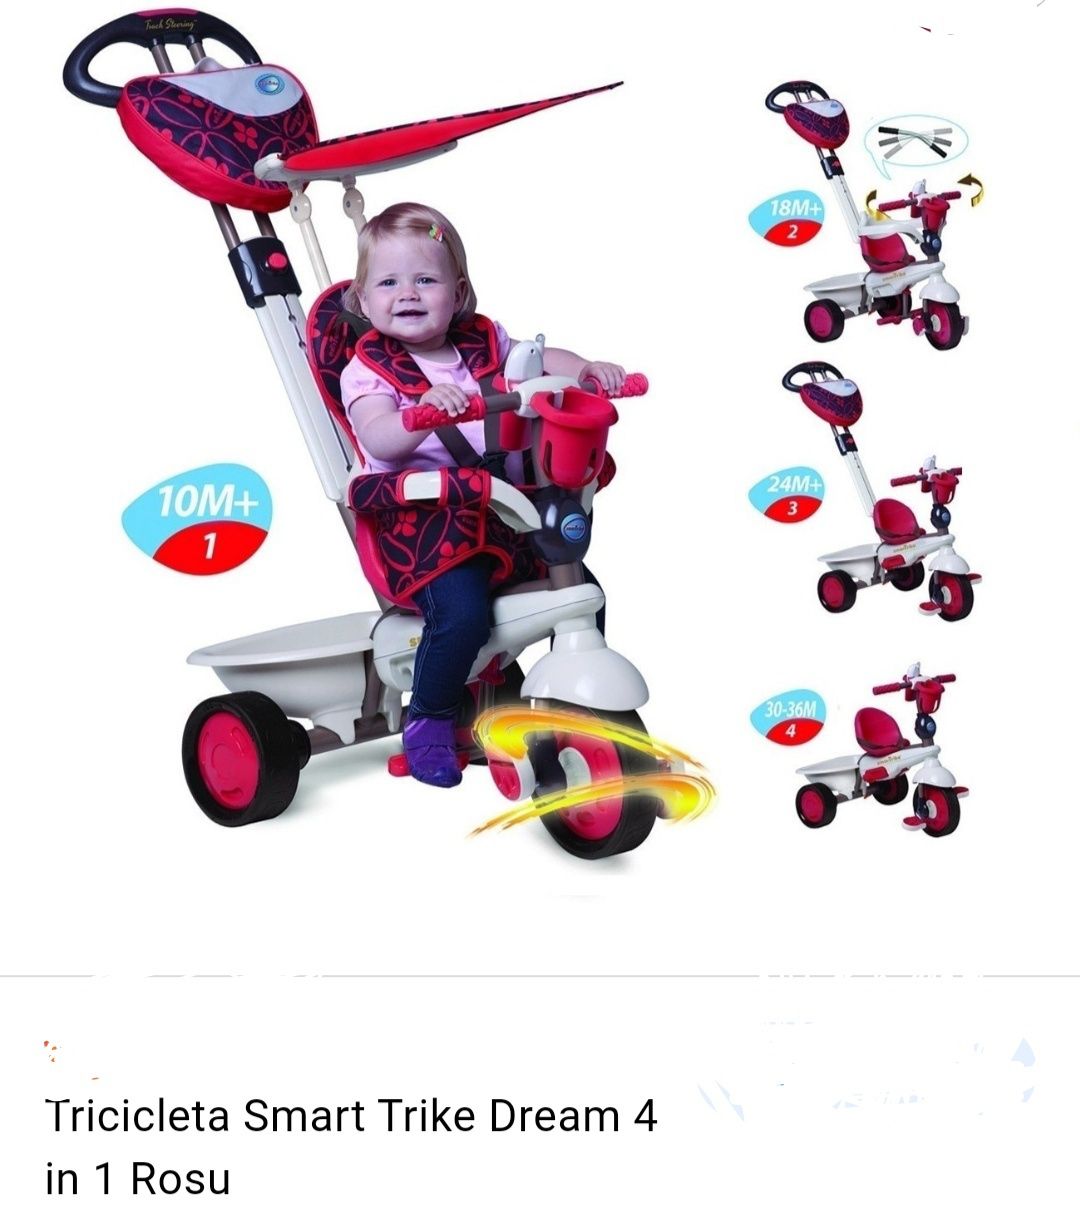 Tricicleta Smart Trike Dream 4 in 1 Rosu